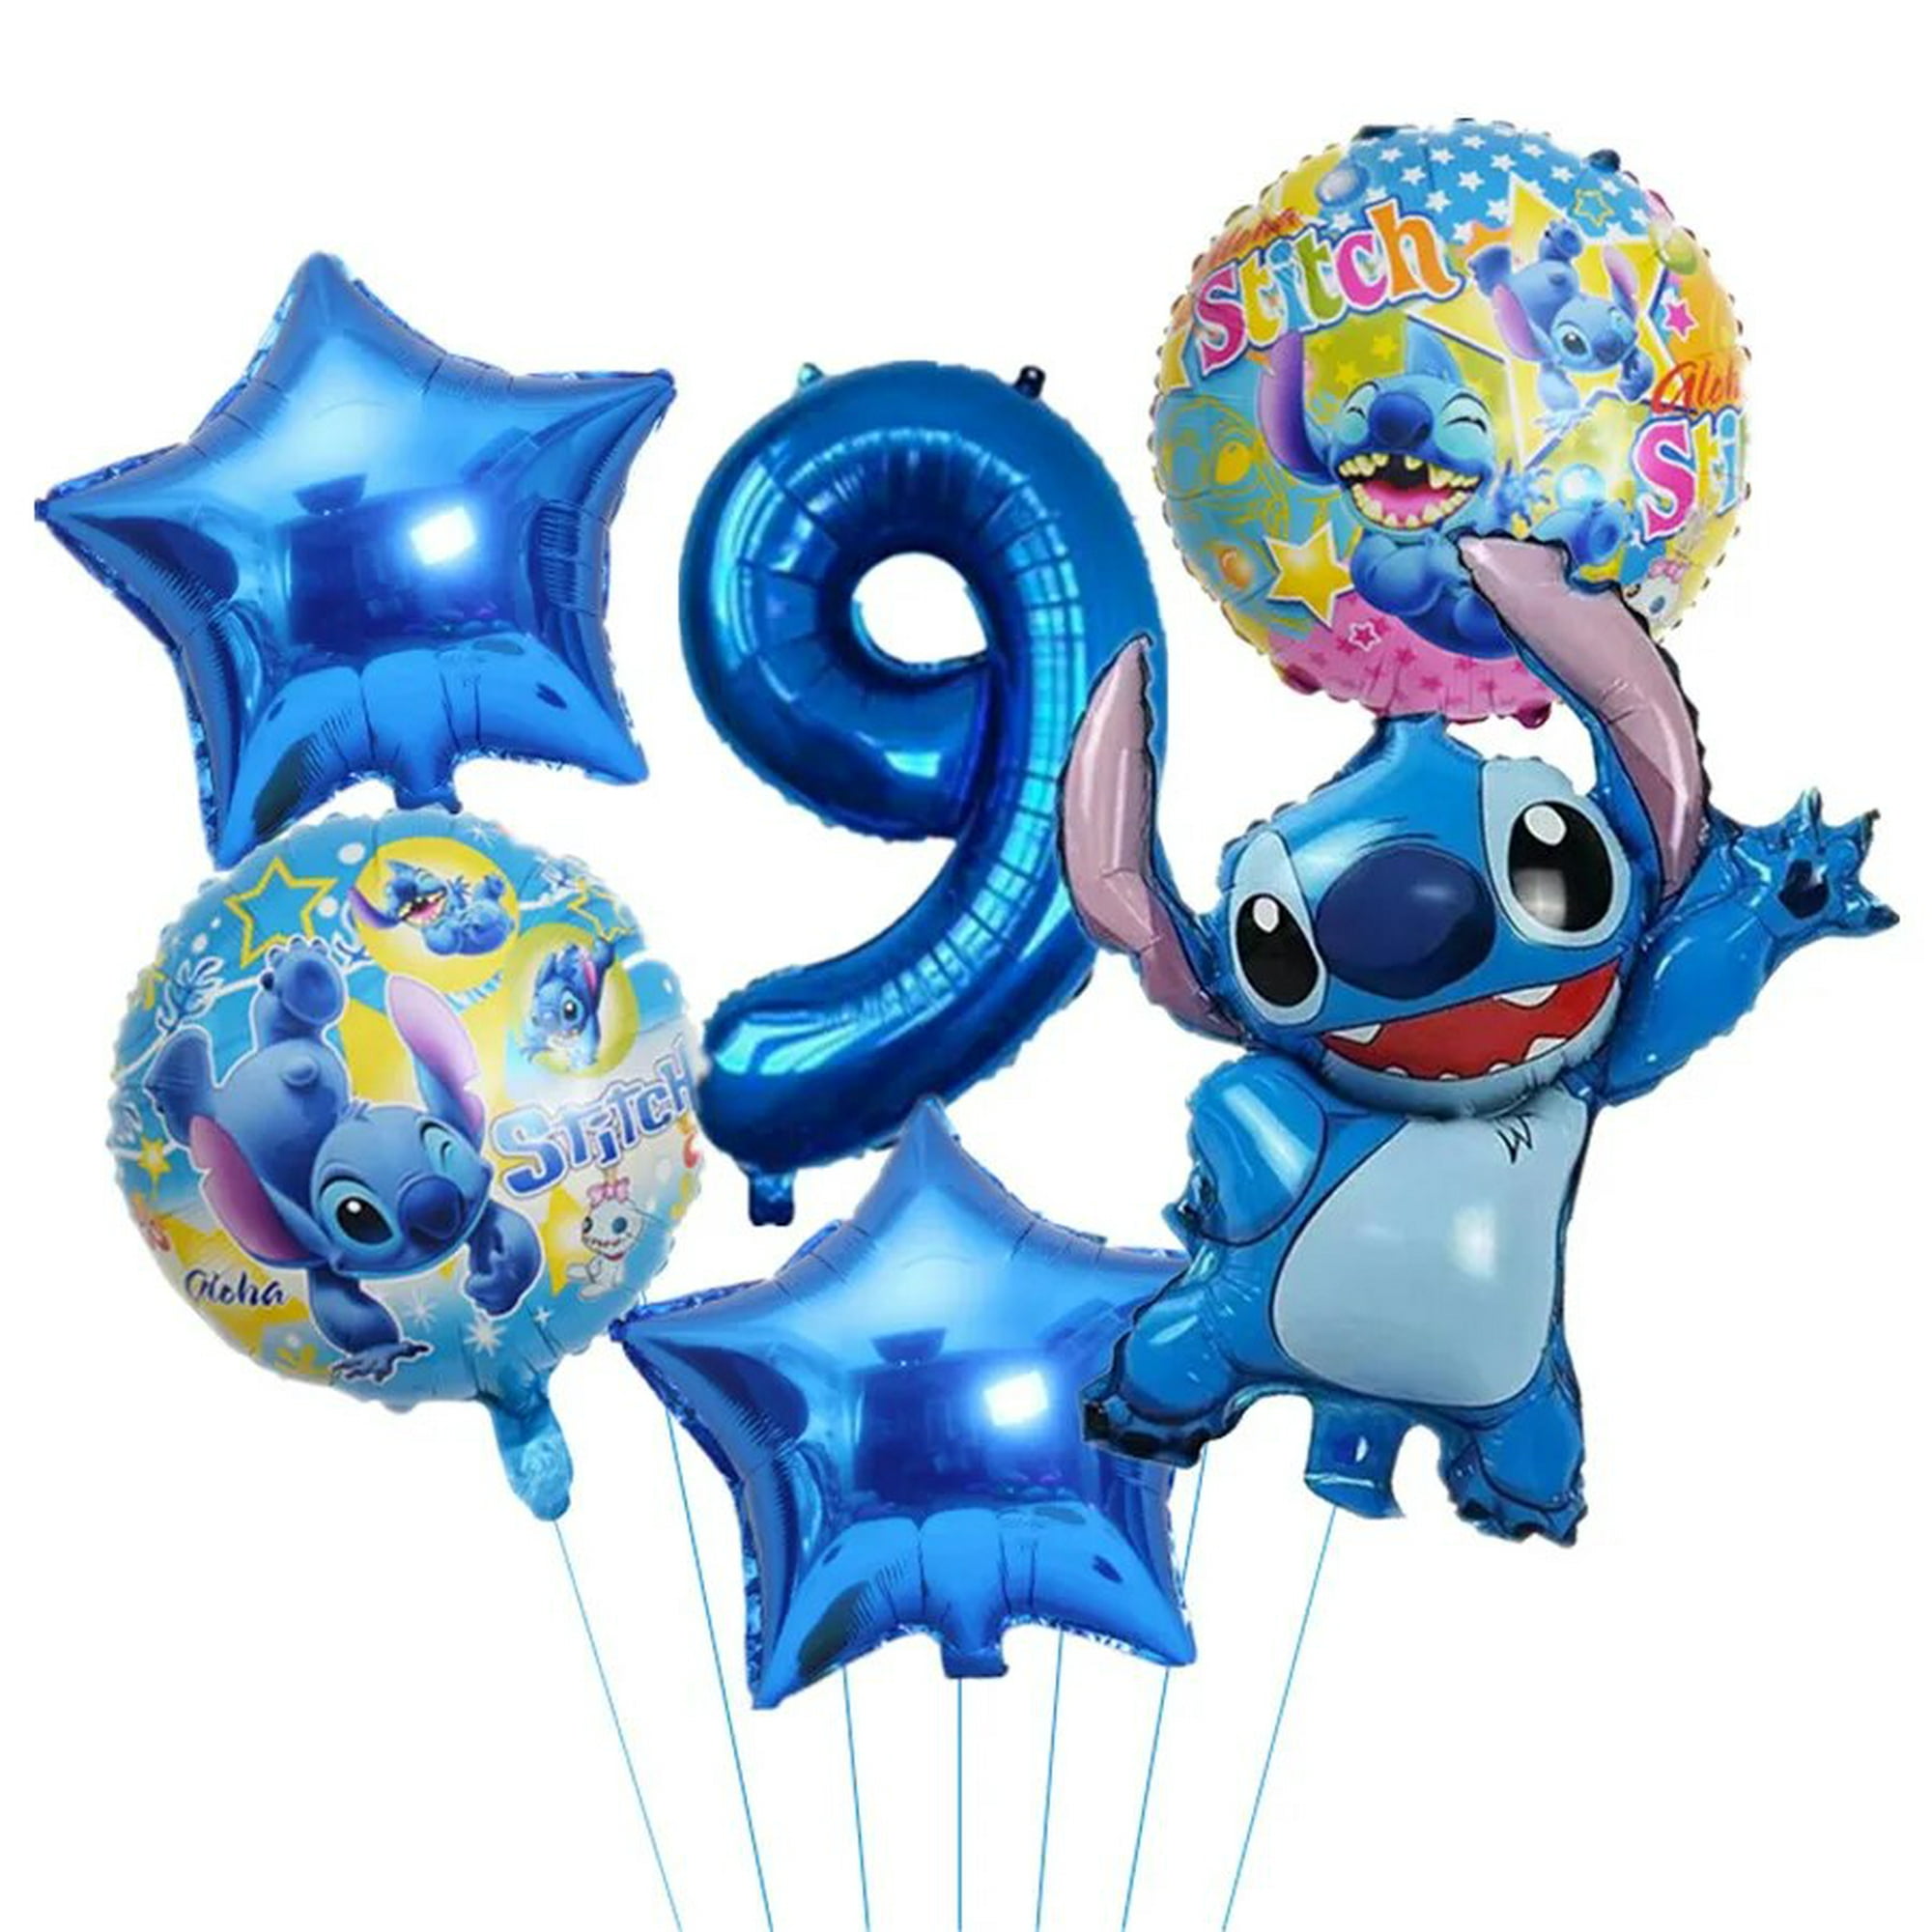 Ideas para fiestas de Stitch, Guía para decorar cumpleaños